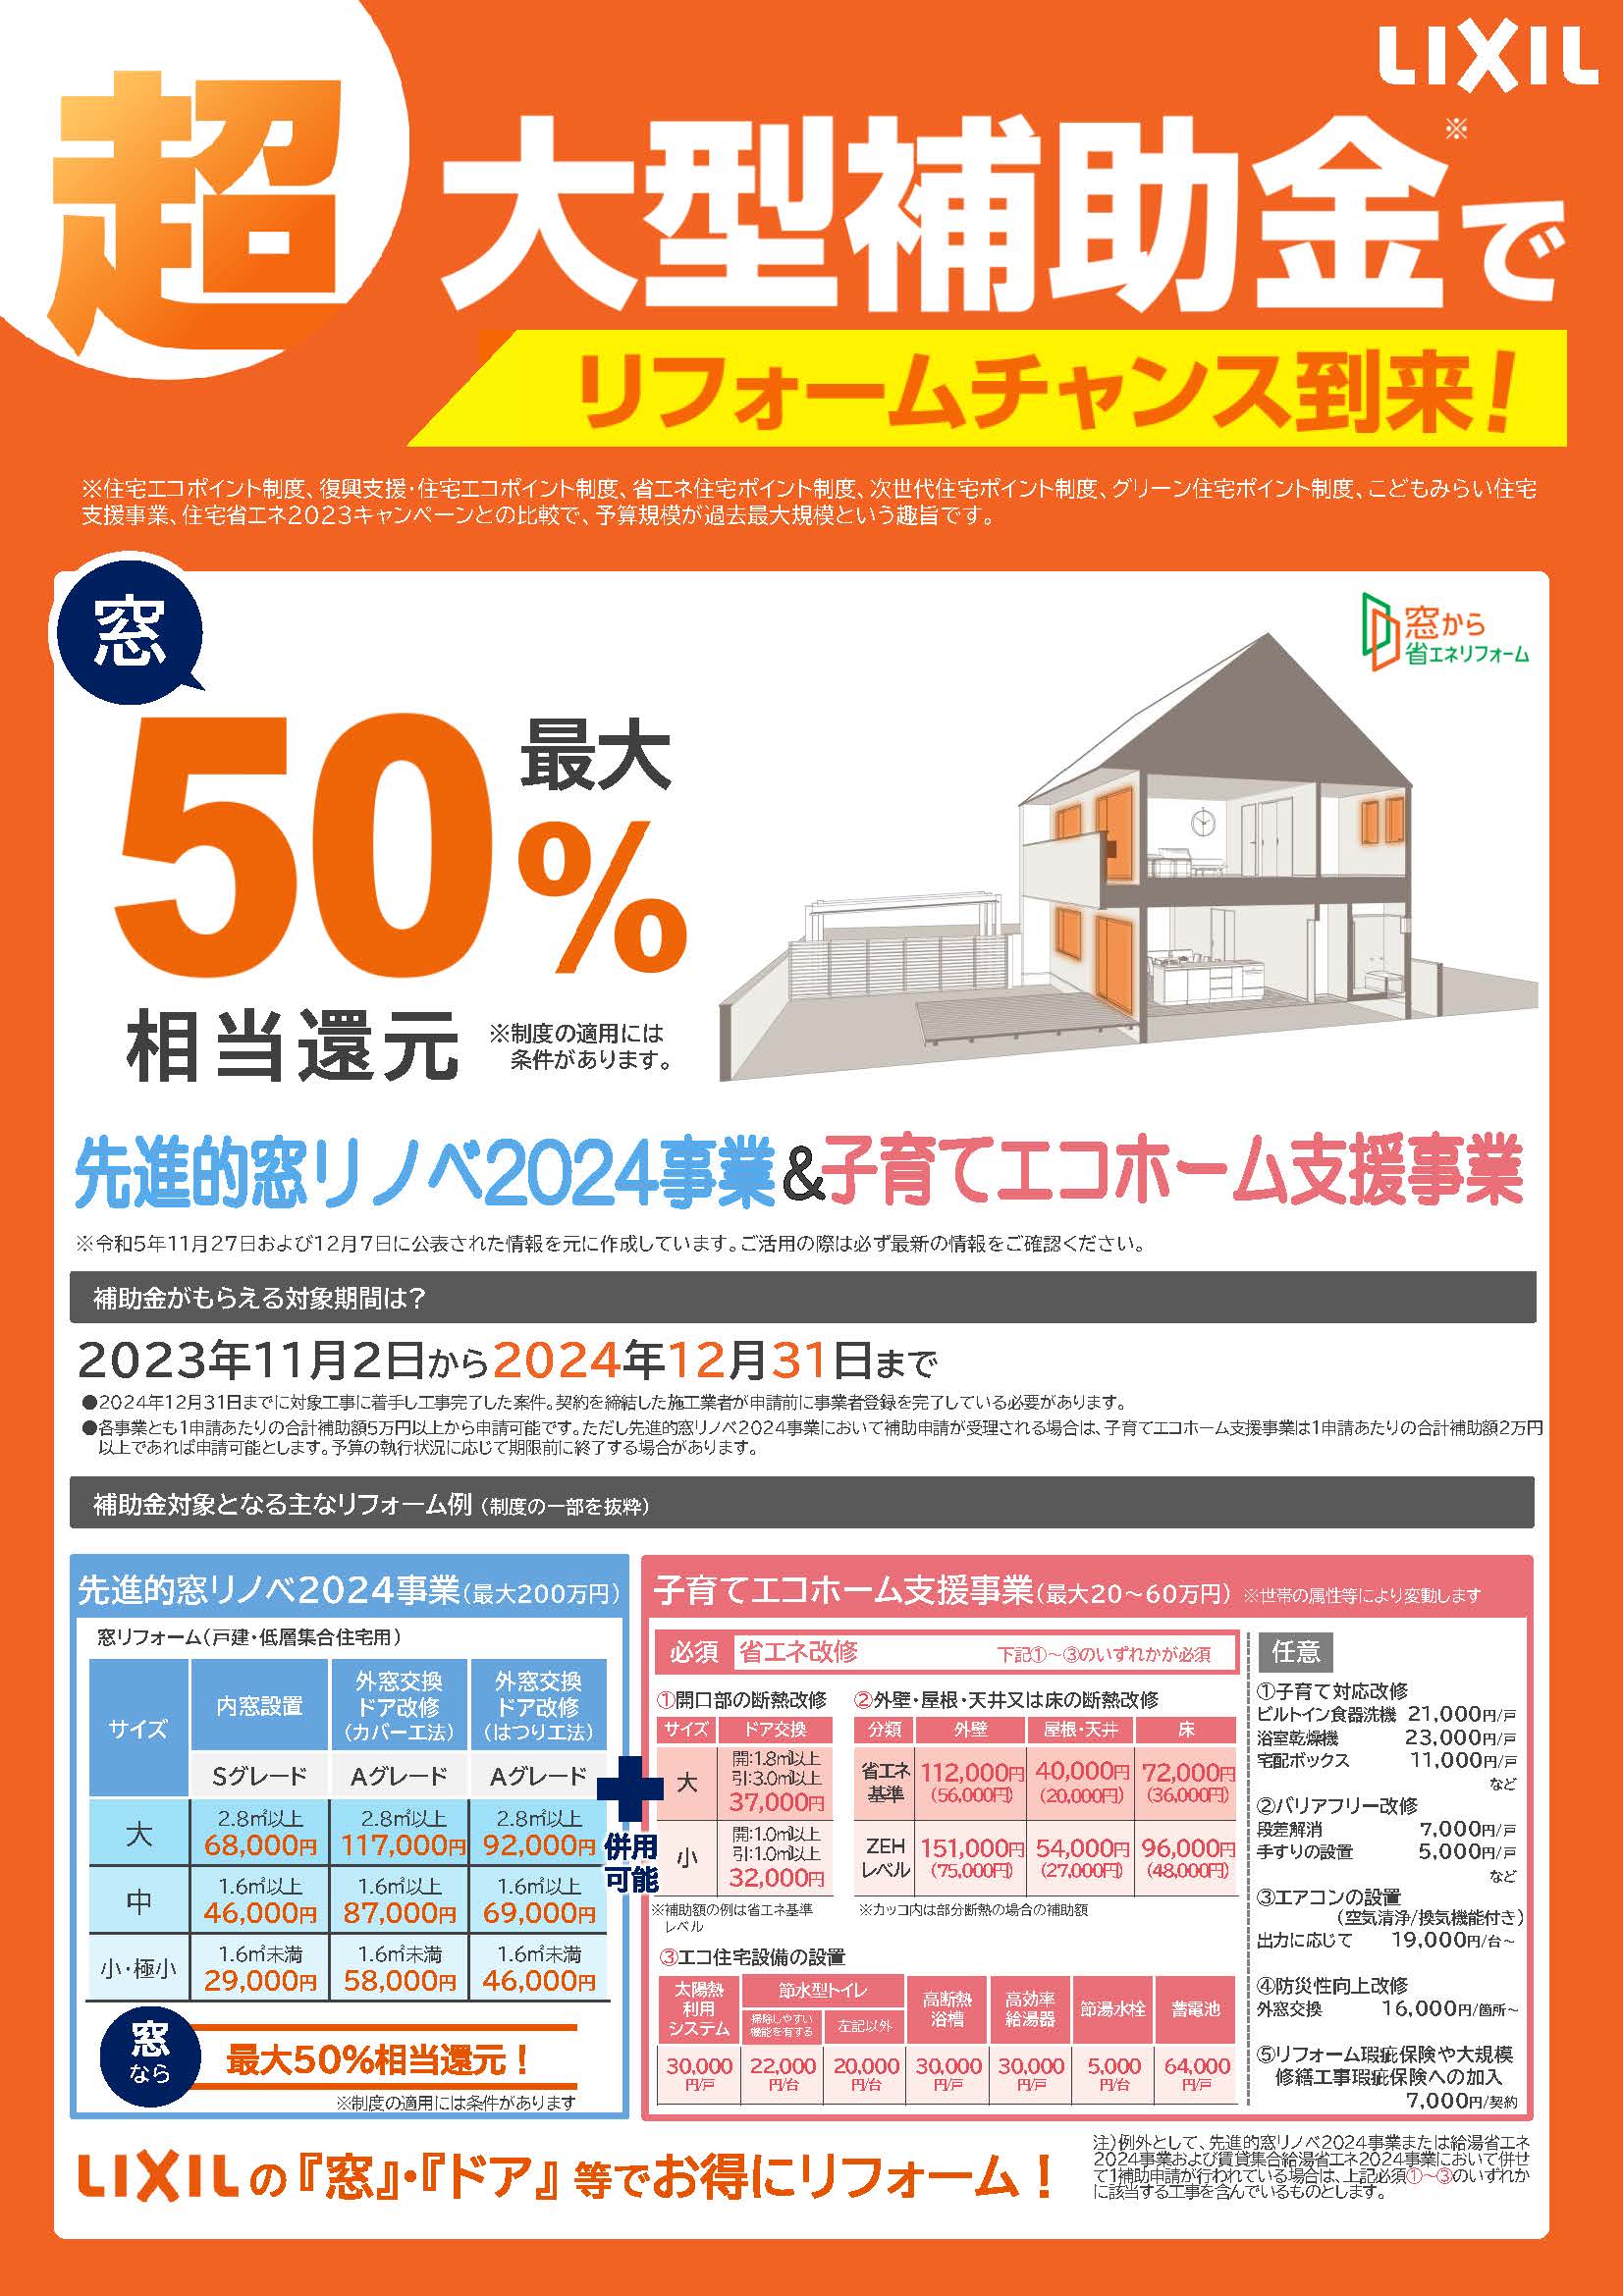 リフォーム補助金2024 東京石原トーヨー住器のイベントキャンペーン 写真1